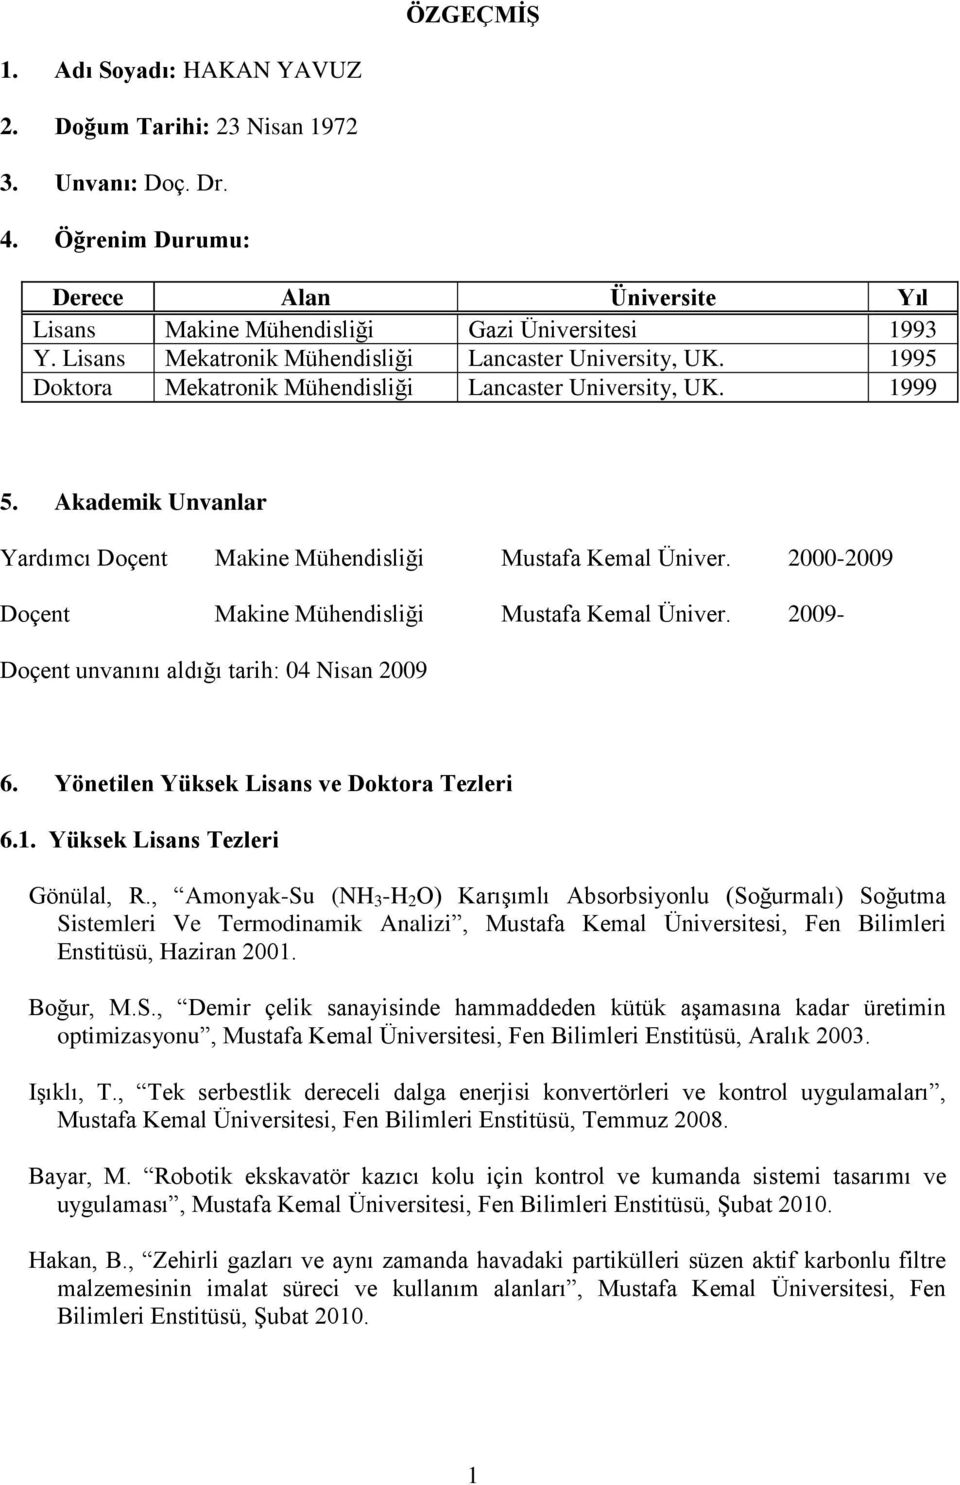 2000-2009 Doçent Makine Mühendisliği Mustafa Kemal Üniver. 2009- Doçent unvanını aldığı tarih: 04 Nisan 2009 6. Yönetilen Yüksek Lisans ve Doktora Tezleri 6.1. Yüksek Lisans Tezleri Gönülal, R.